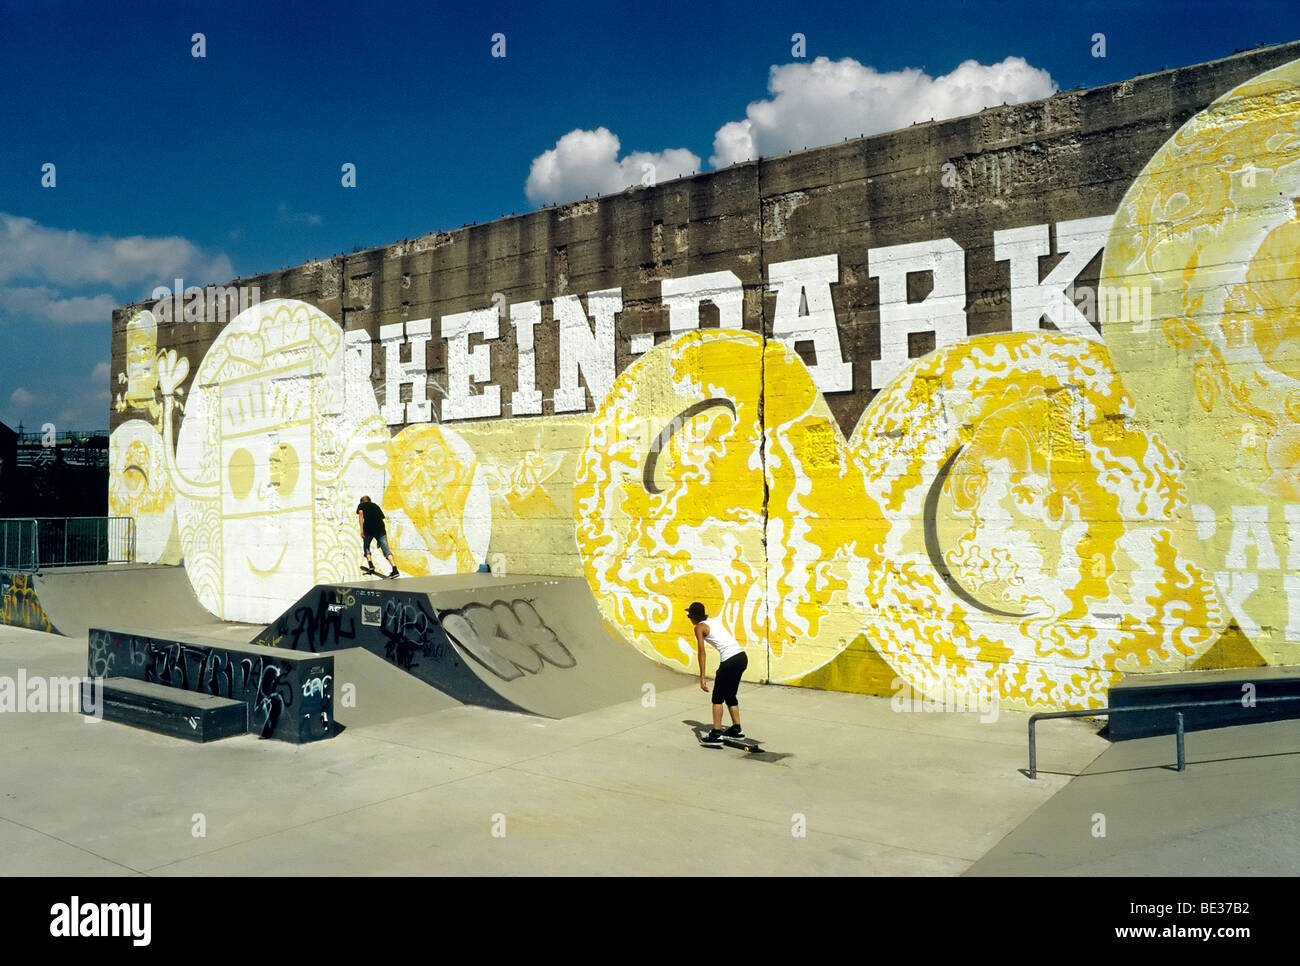 Skate park, vieux mur de béton avec des graffitis, Rheinpark, nouveau centre-ville sur le Rhin, Duisburg Nord, Rhine-Westphal Hochfeld Banque D'Images